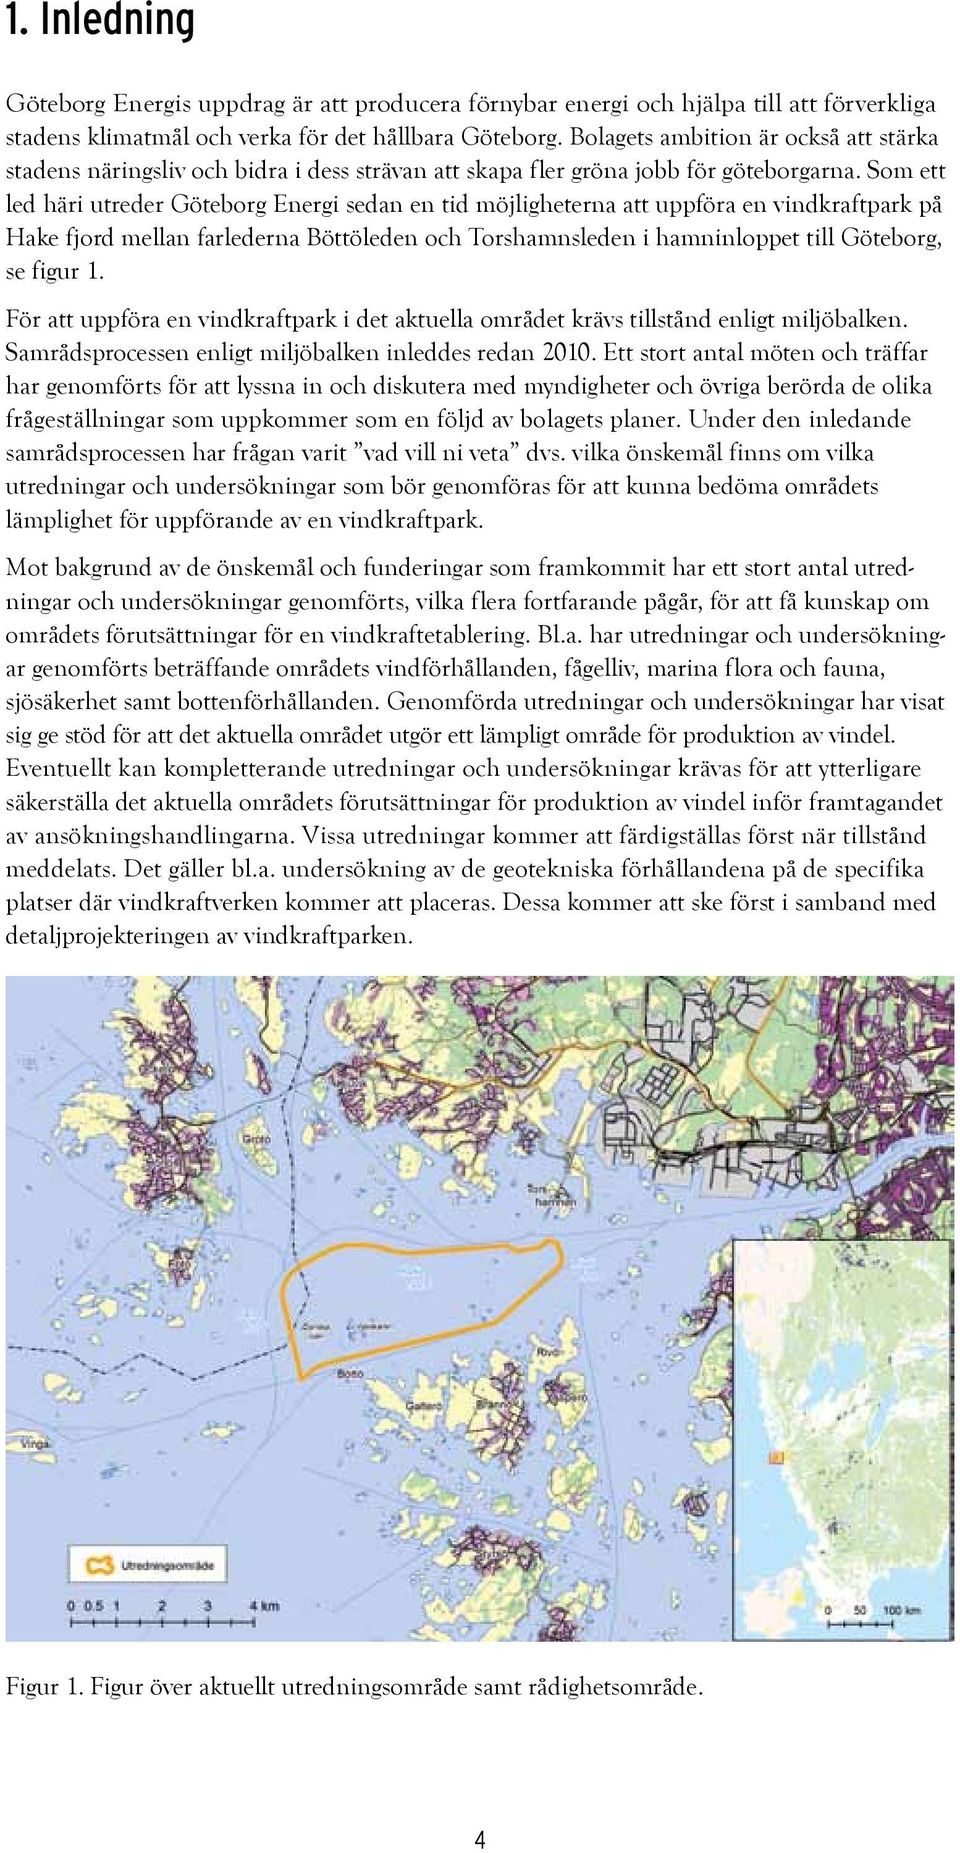 Som ett led häri utreder Göteborg Energi sedan en tid möjligheterna att uppföra en vindkraftpark på Hake fjord mellan farlederna Böttöleden och Torshamnsleden i hamninloppet till Göteborg, se figur 1.